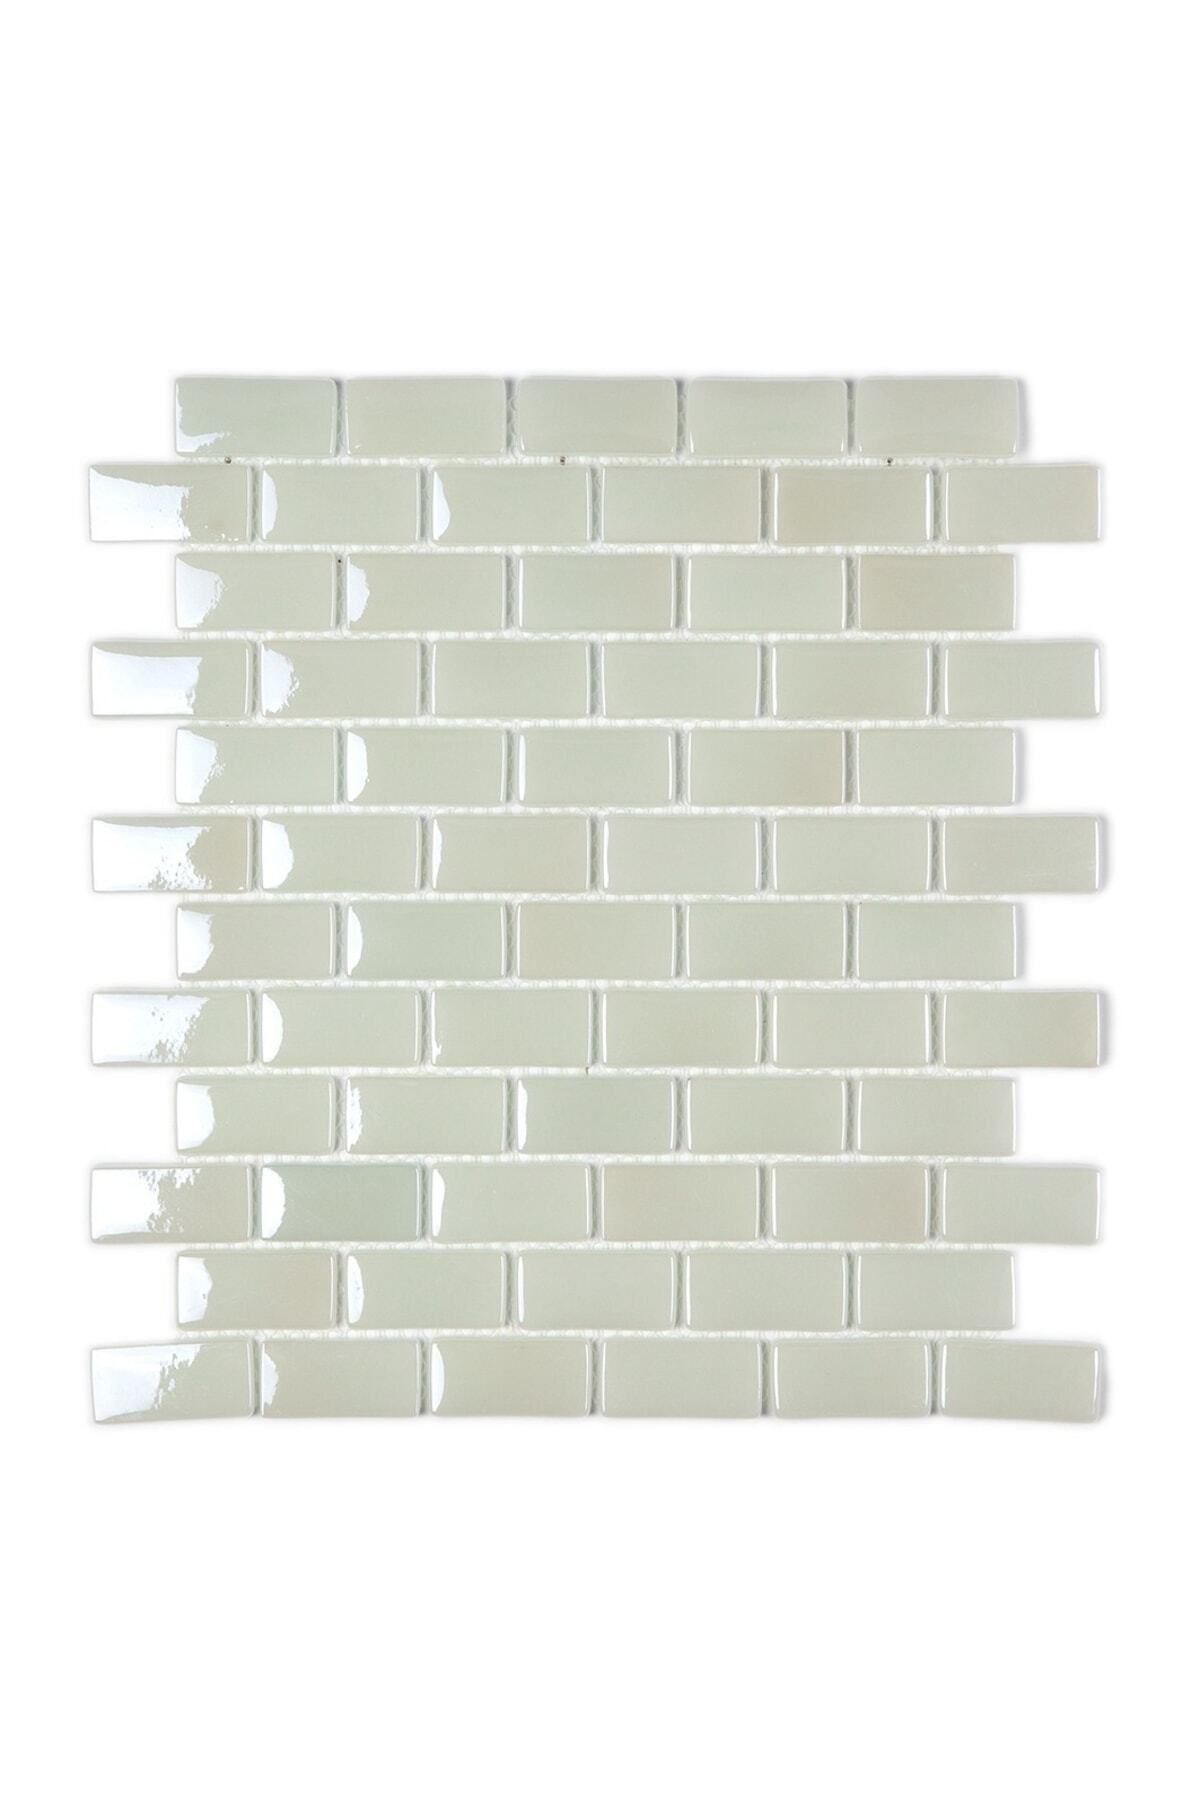 MozaiKristaL Mutfak Tezgah Arası Ve Tüm Yüzeyler Için 25x50x5 Mm Beyaz Cam Mozaik (1 KOLİ=1 M2 FİYATIDIR)